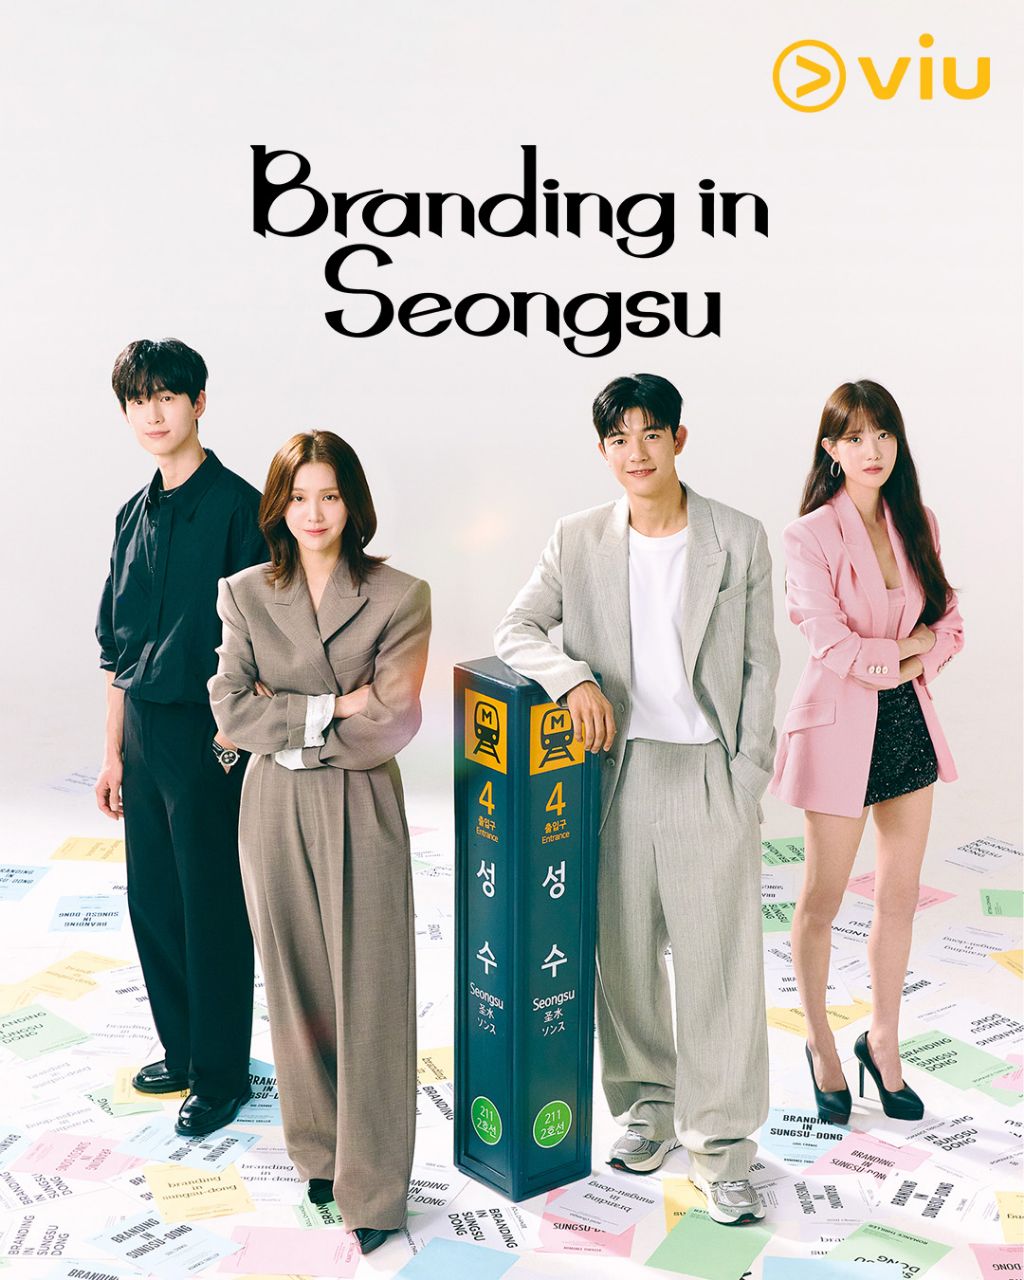 مسلسل العلامة التجارية في سيونغسو Branding in Seongsu الحلقة 3